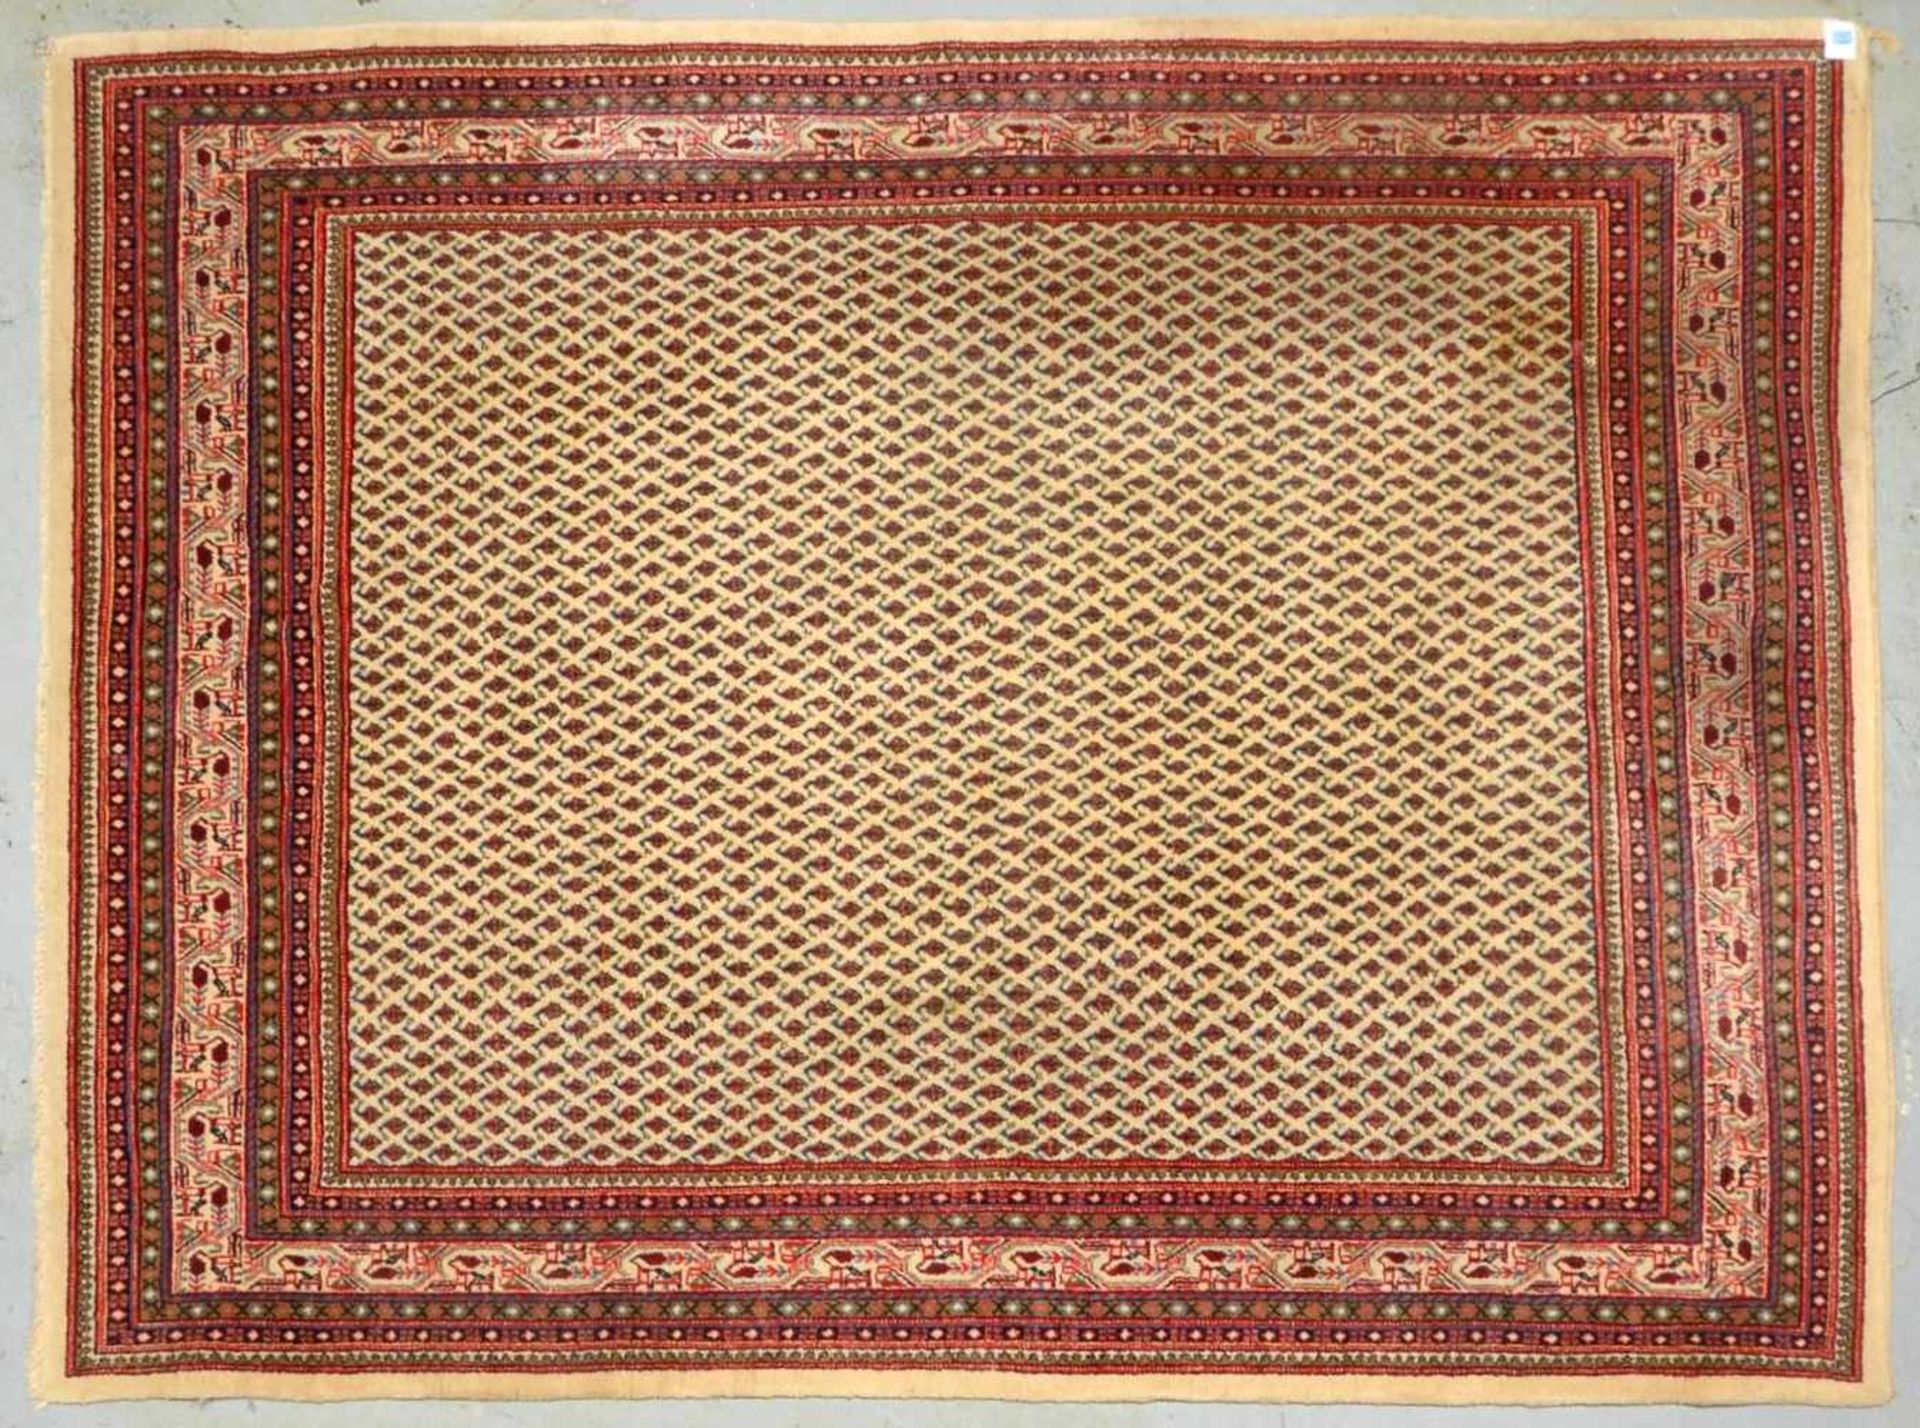 Serabend Mir-Orientteppich, durchgemusterter Fond, hochflorig; Maße 275 x 210 cm